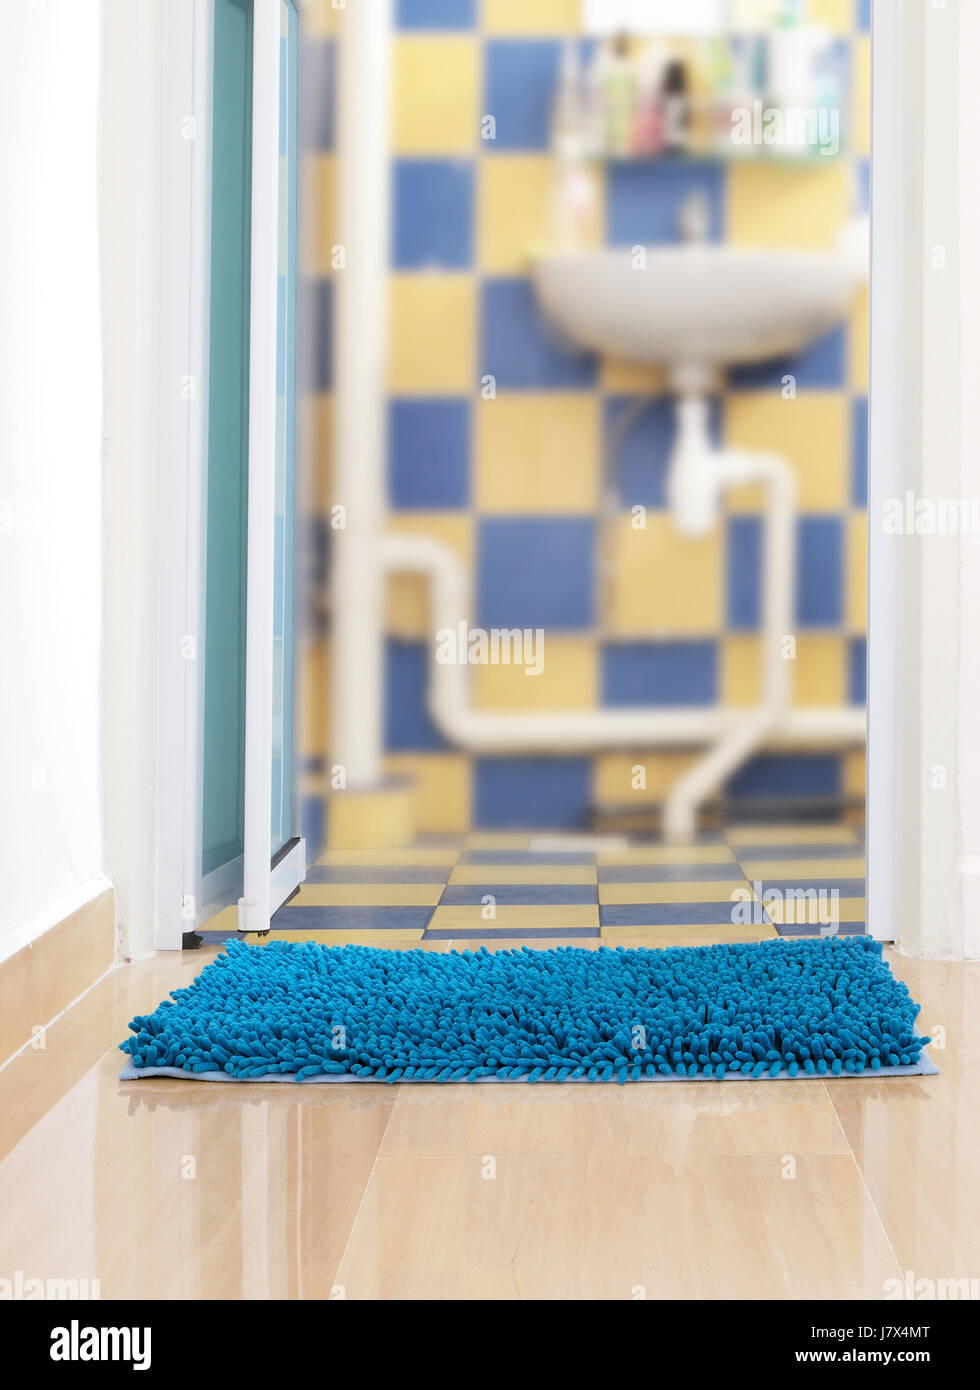 Objet bleu tapis de sol de la salle de bains ménage synthétique bleu couleur des ménages de l'objet Banque D'Images